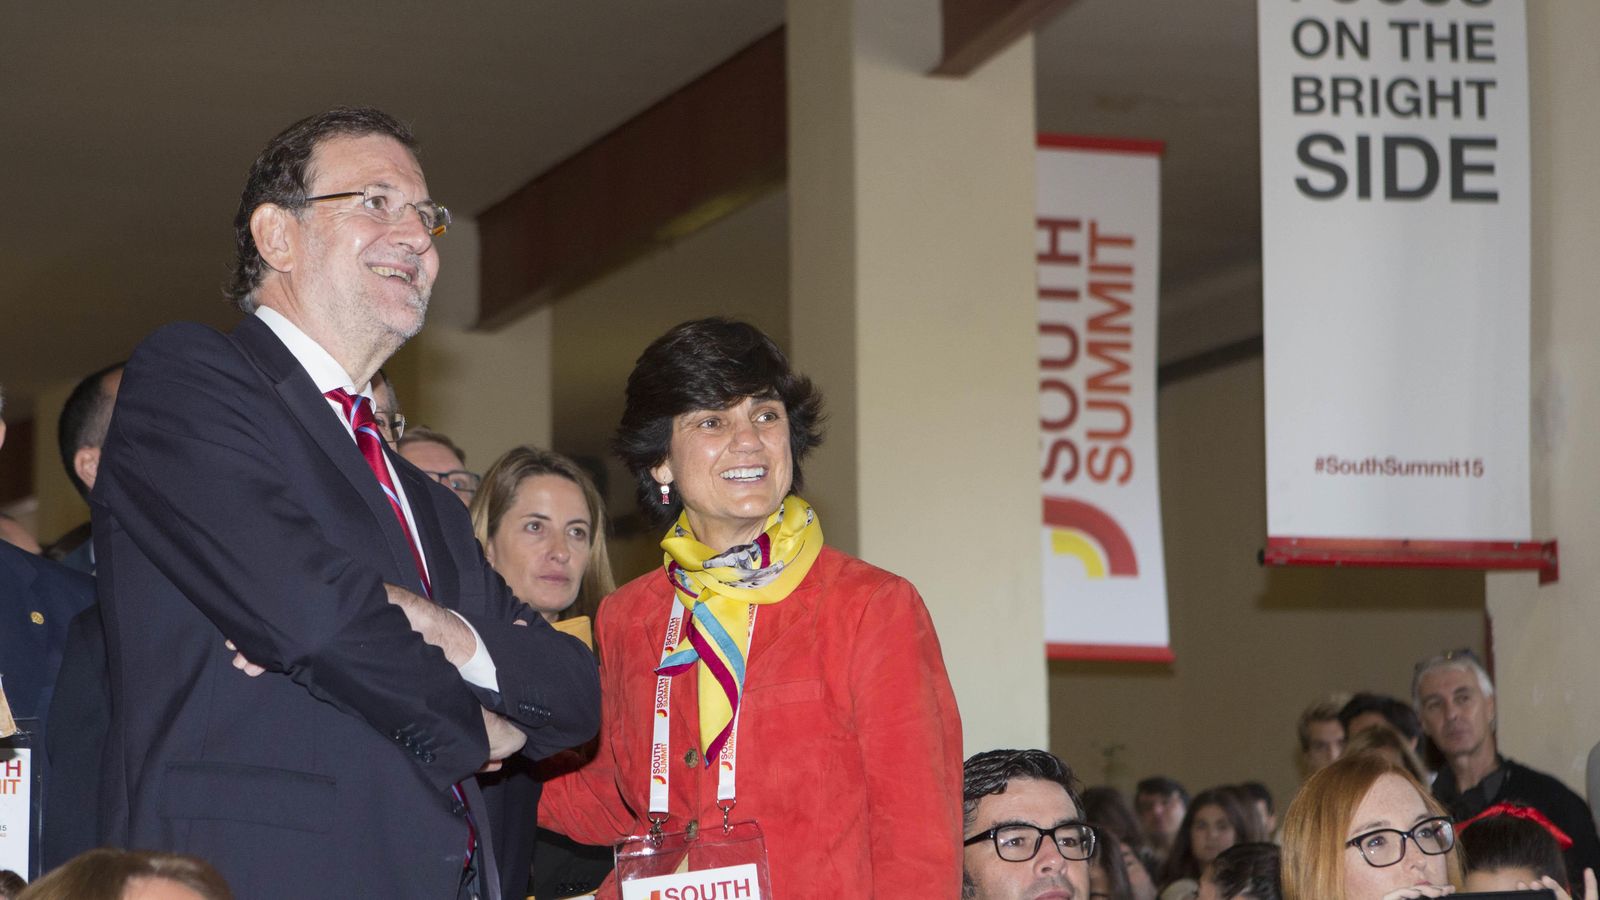 Foto: Mariano Rajoy visita el South Summit (Foto: South Summit)